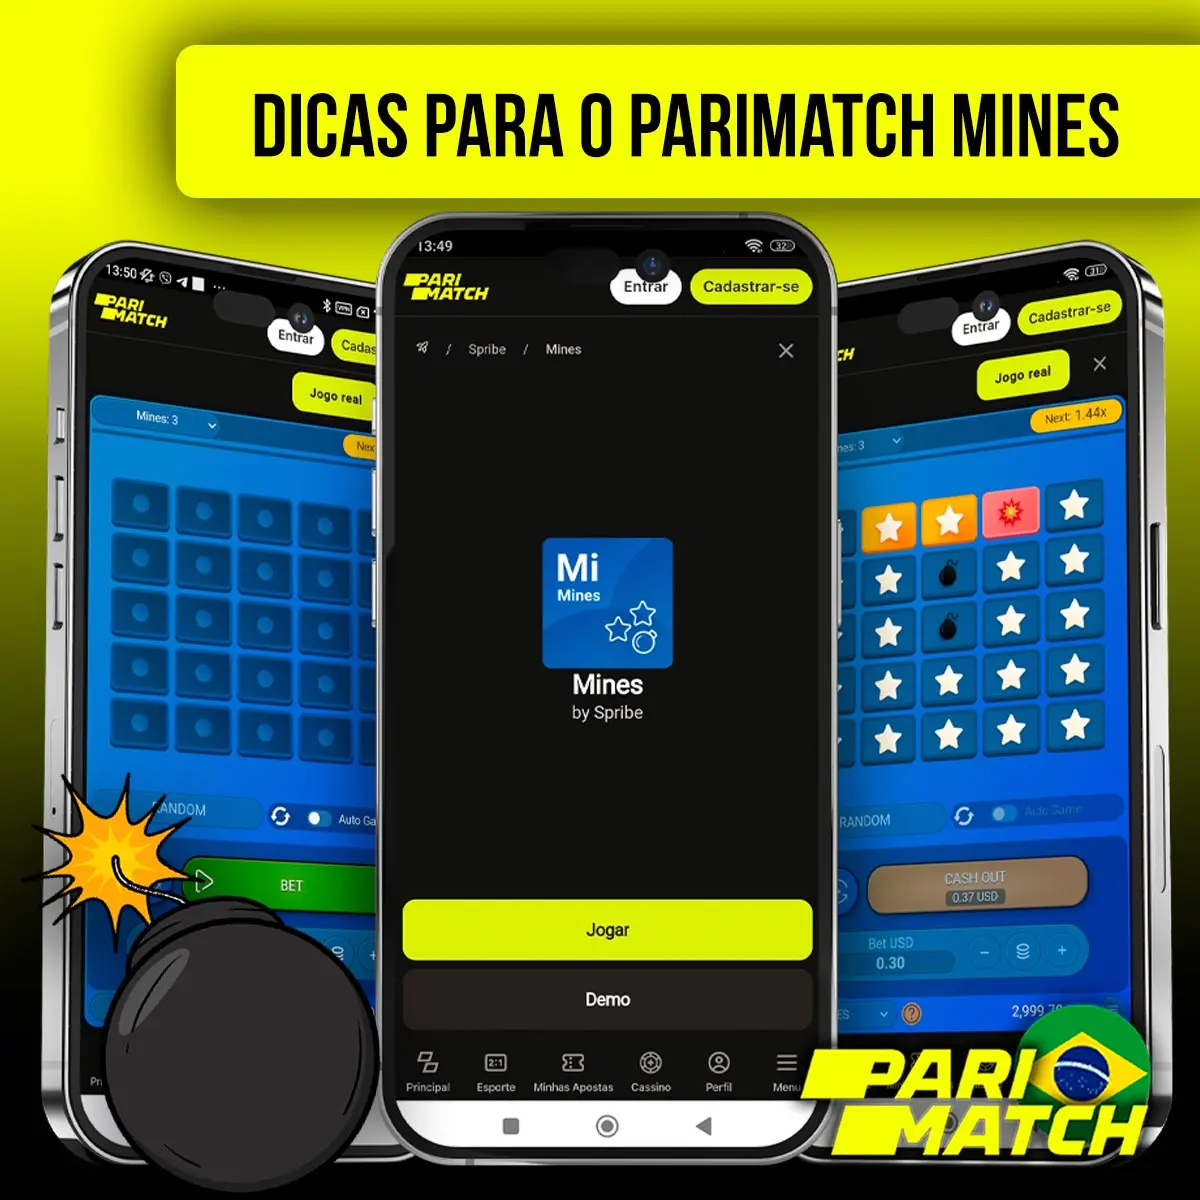 Dicas para jogar Parimatch mines